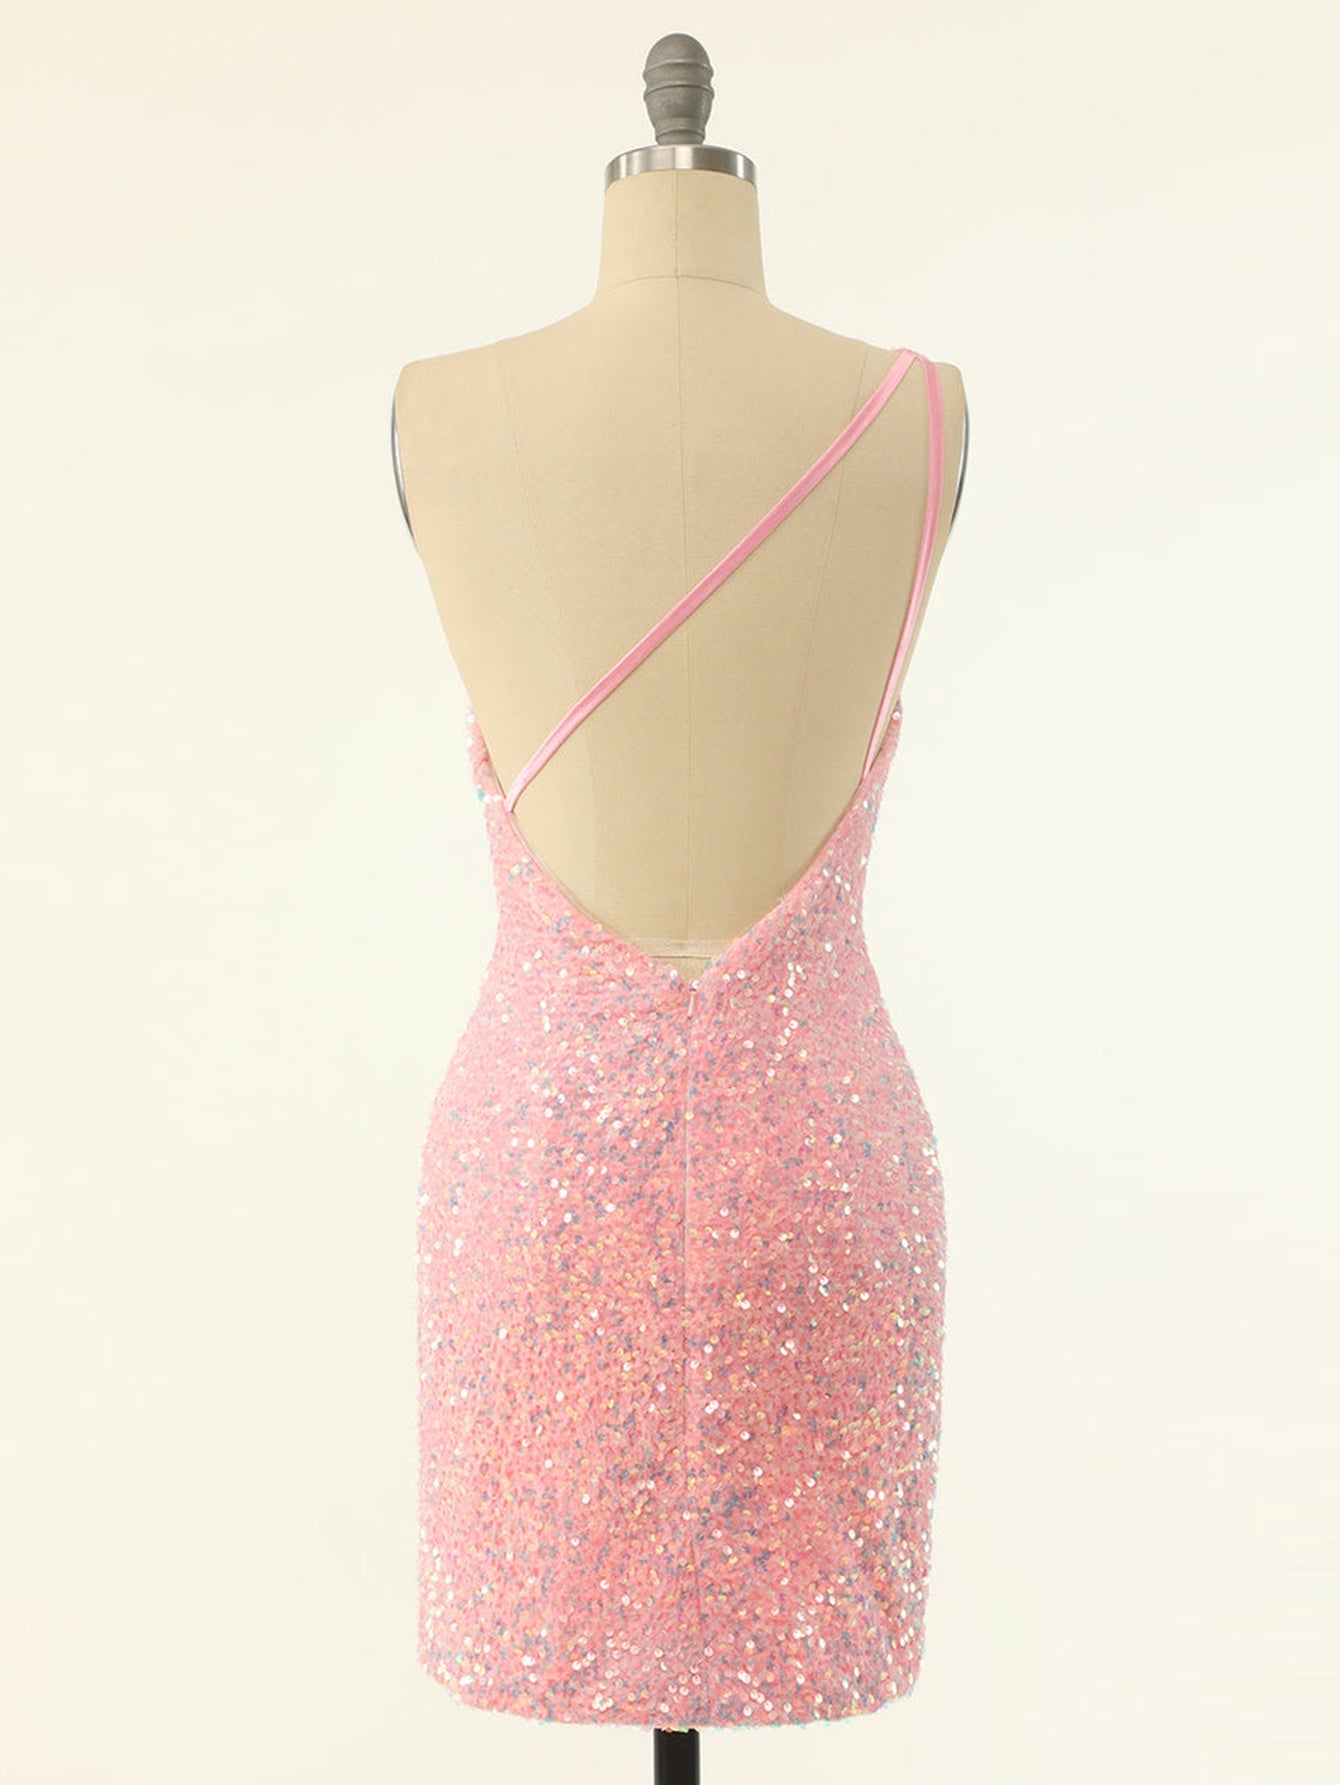 One-Shoulder Light Pink Homecoming Short Dress